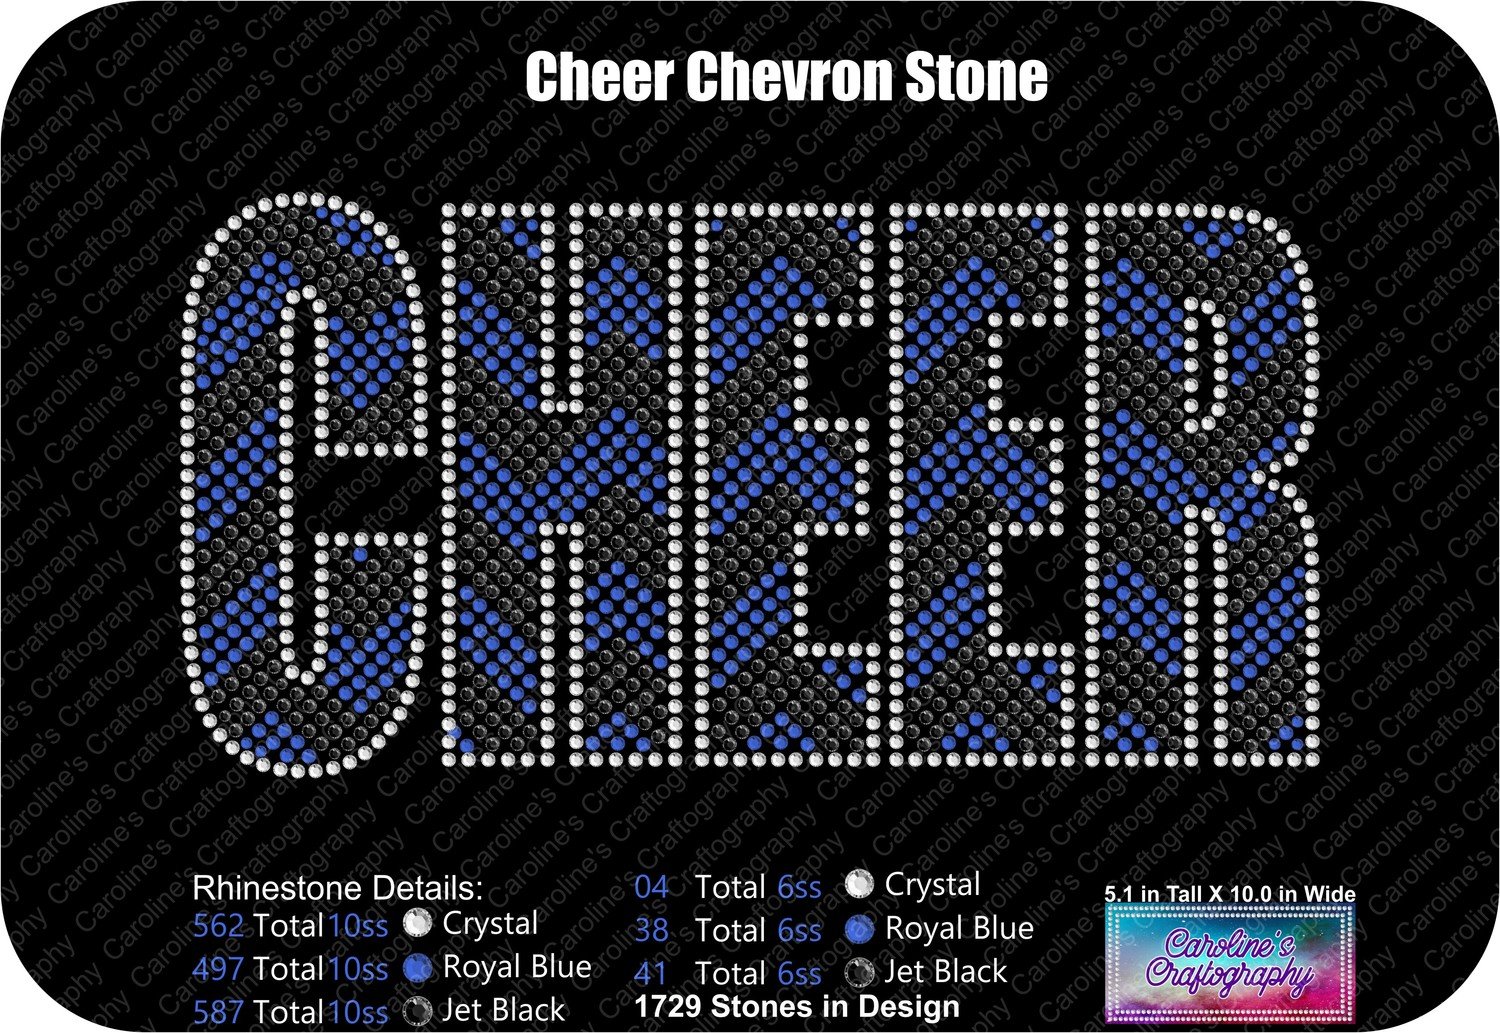 Cheer Chevron Stone